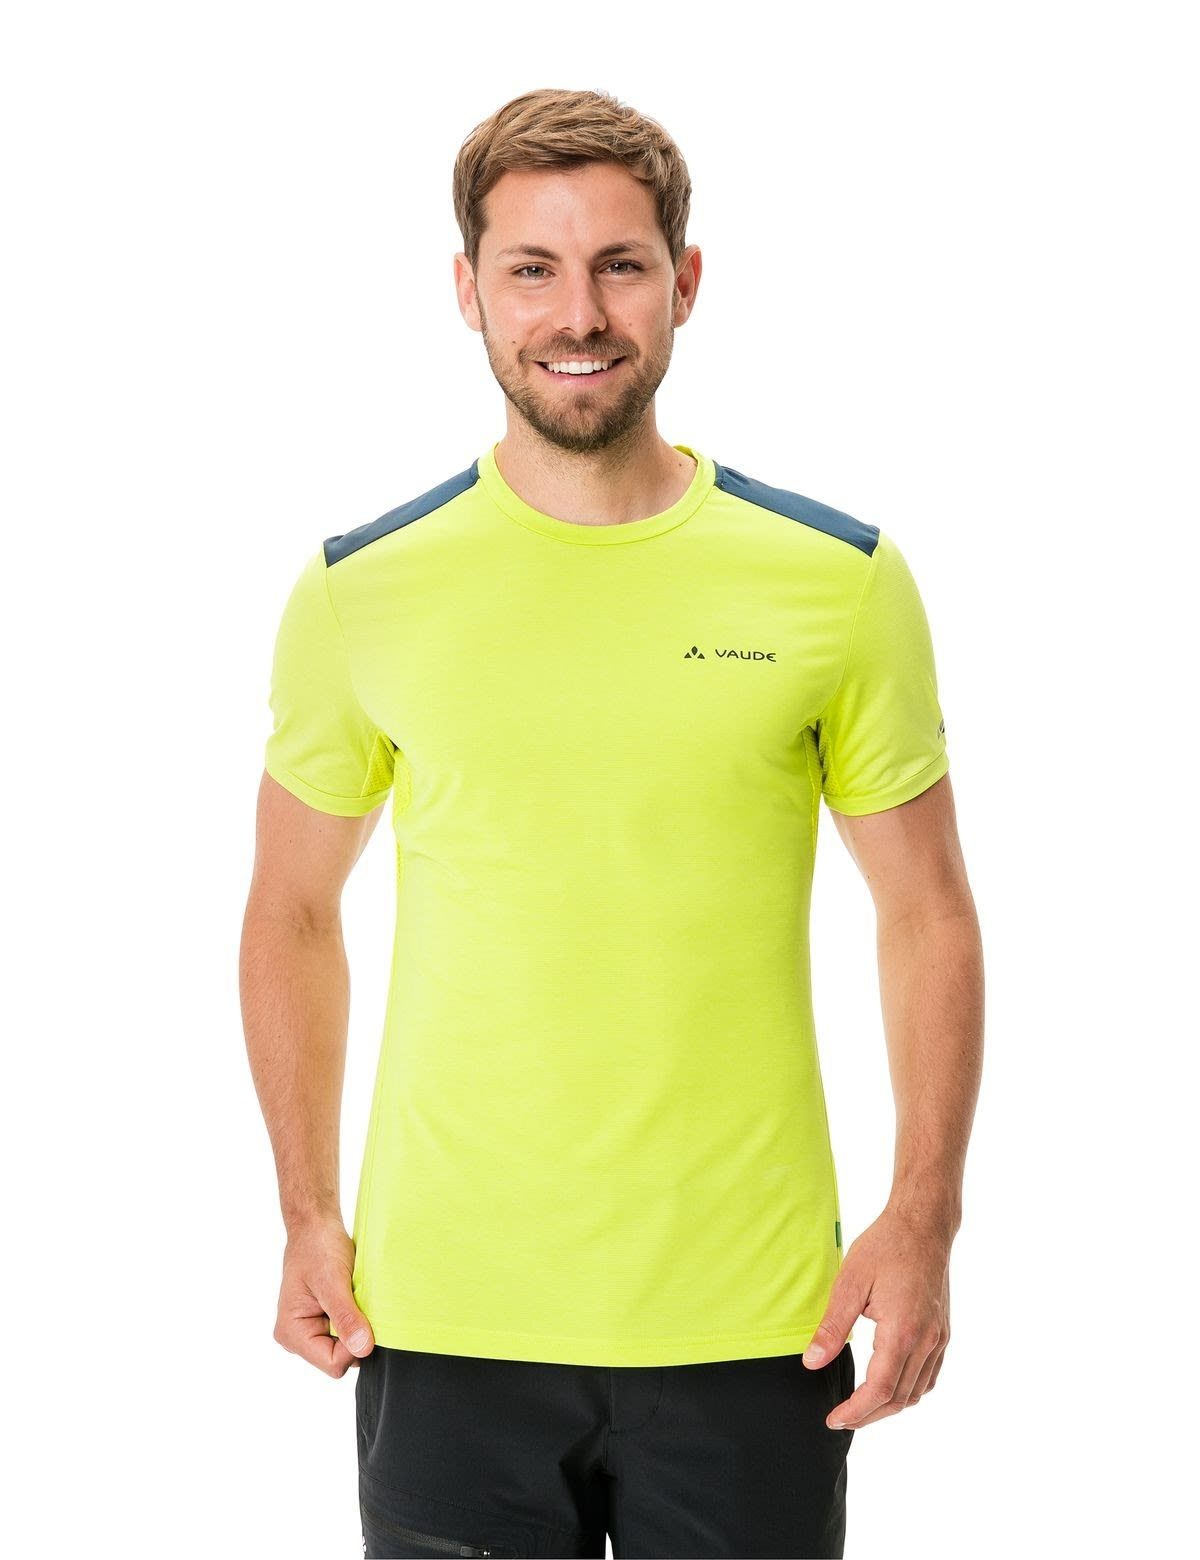 Kurzarm-Shirt Herren T-shirt Mens VAUDE T-Shirt Iii Vaude Bright Scopi Green